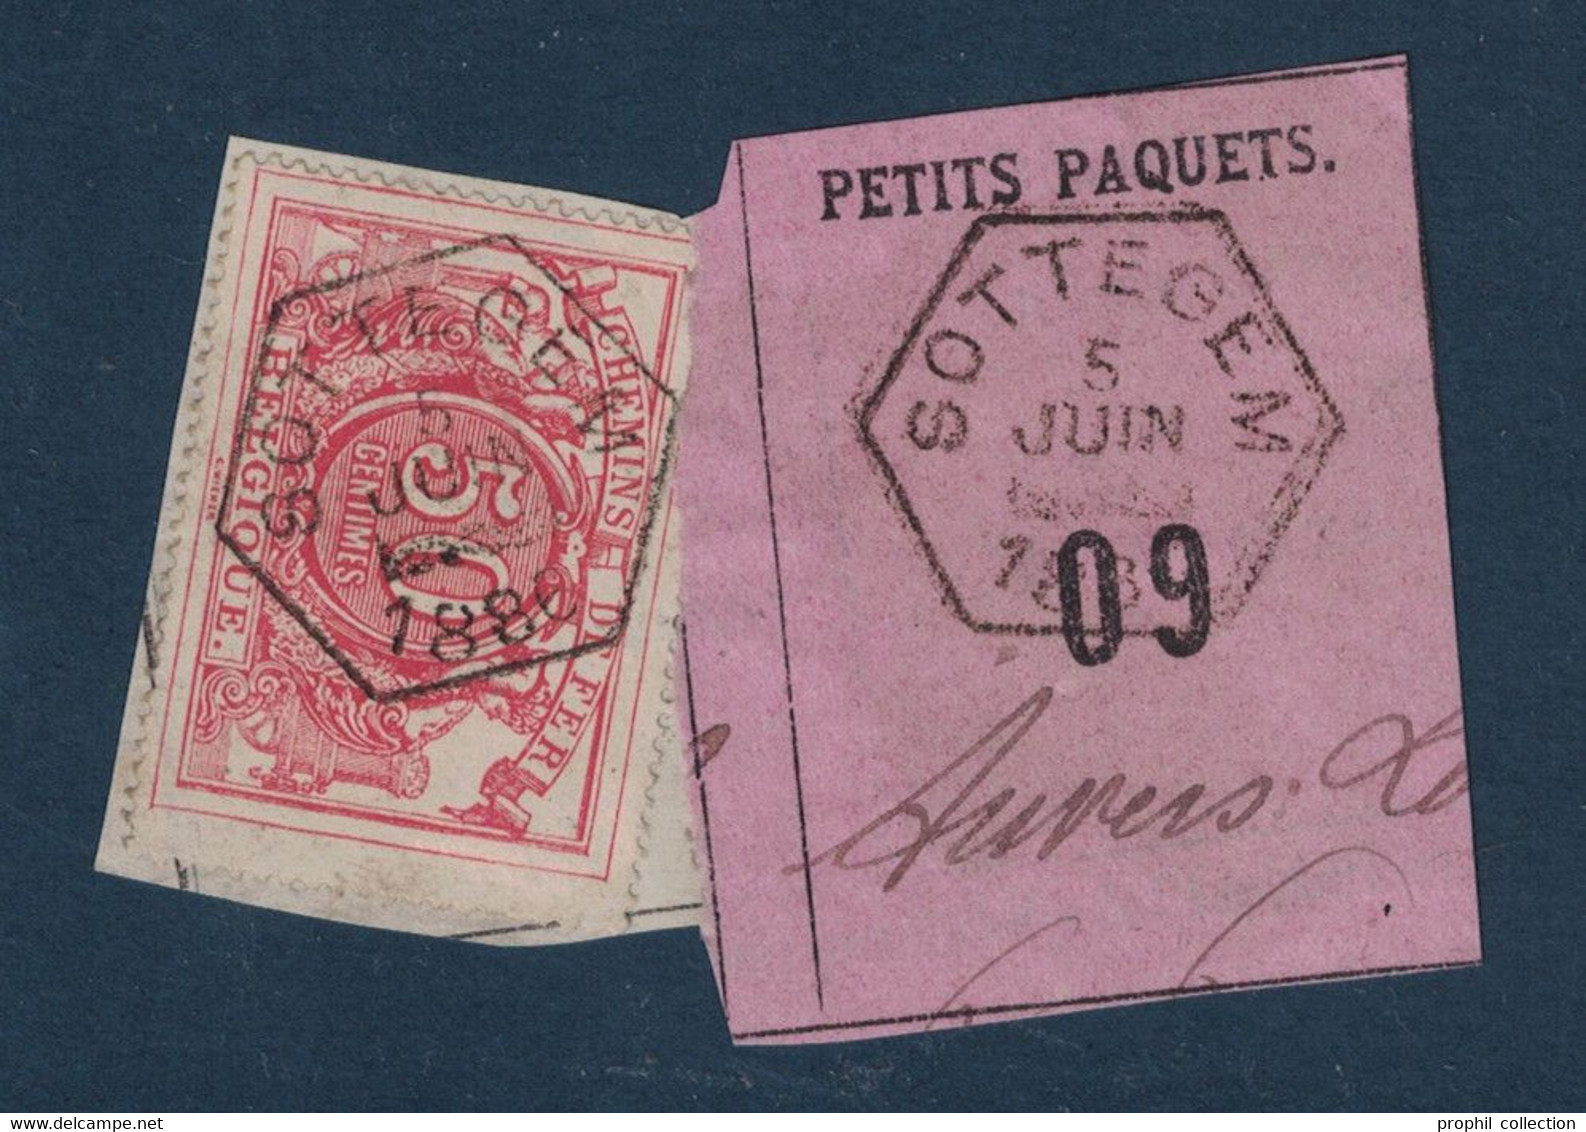 FRAGMENT Avec ETIQUETTE PETITS PAQUETS TIMBRE CHEMINS DE FER CACHET PERUWELZ 1889 - Documents & Fragments